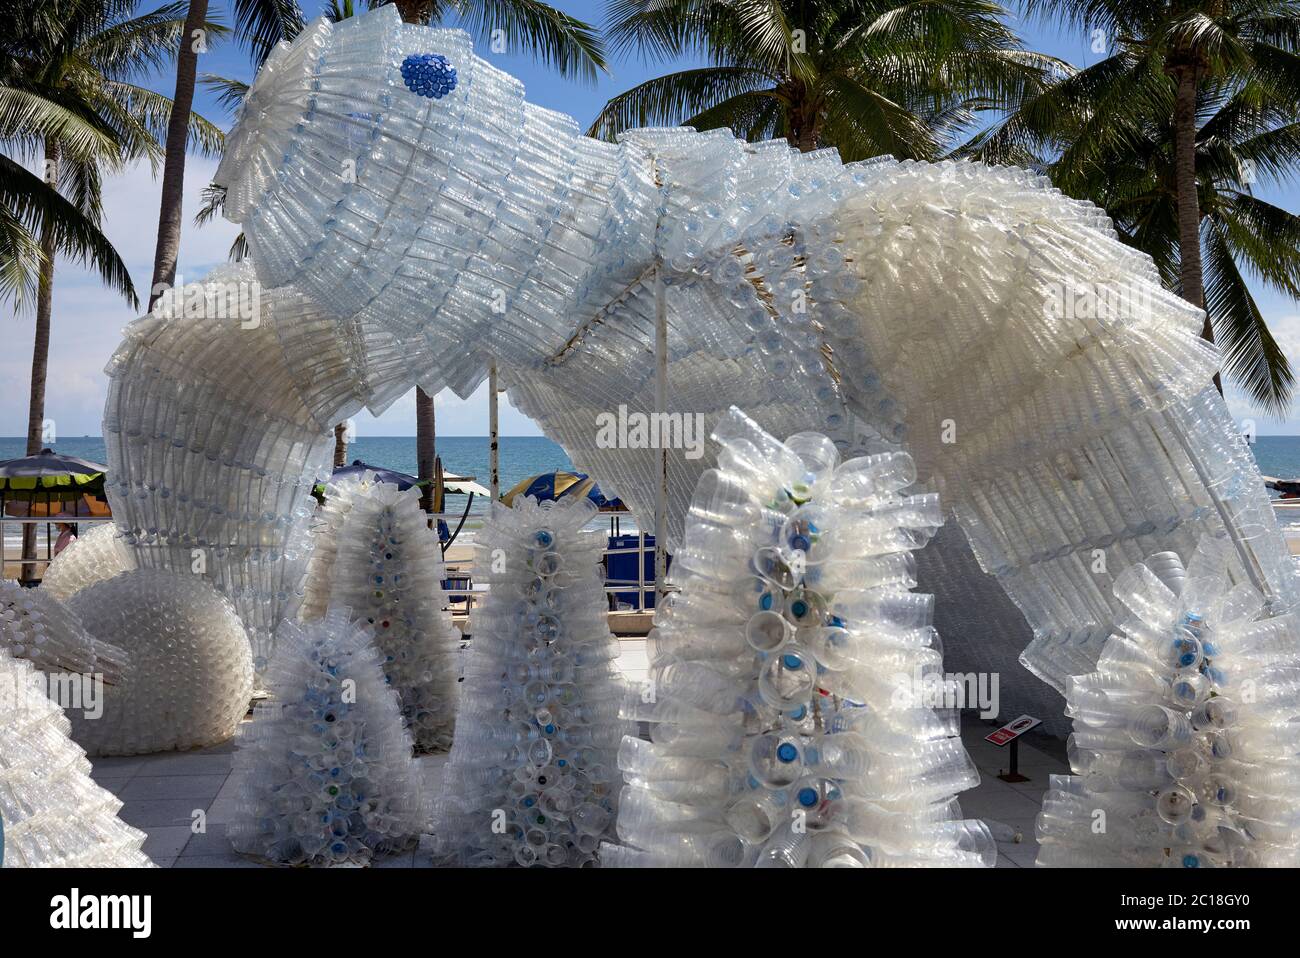 L'art plastique utilisant des gobelets en plastique recyclé met en évidence  les dangers environnementaux de l'élimination du plastique dans la mer.  Jomtien, Pattaya, Thaïlande Photo Stock - Alamy